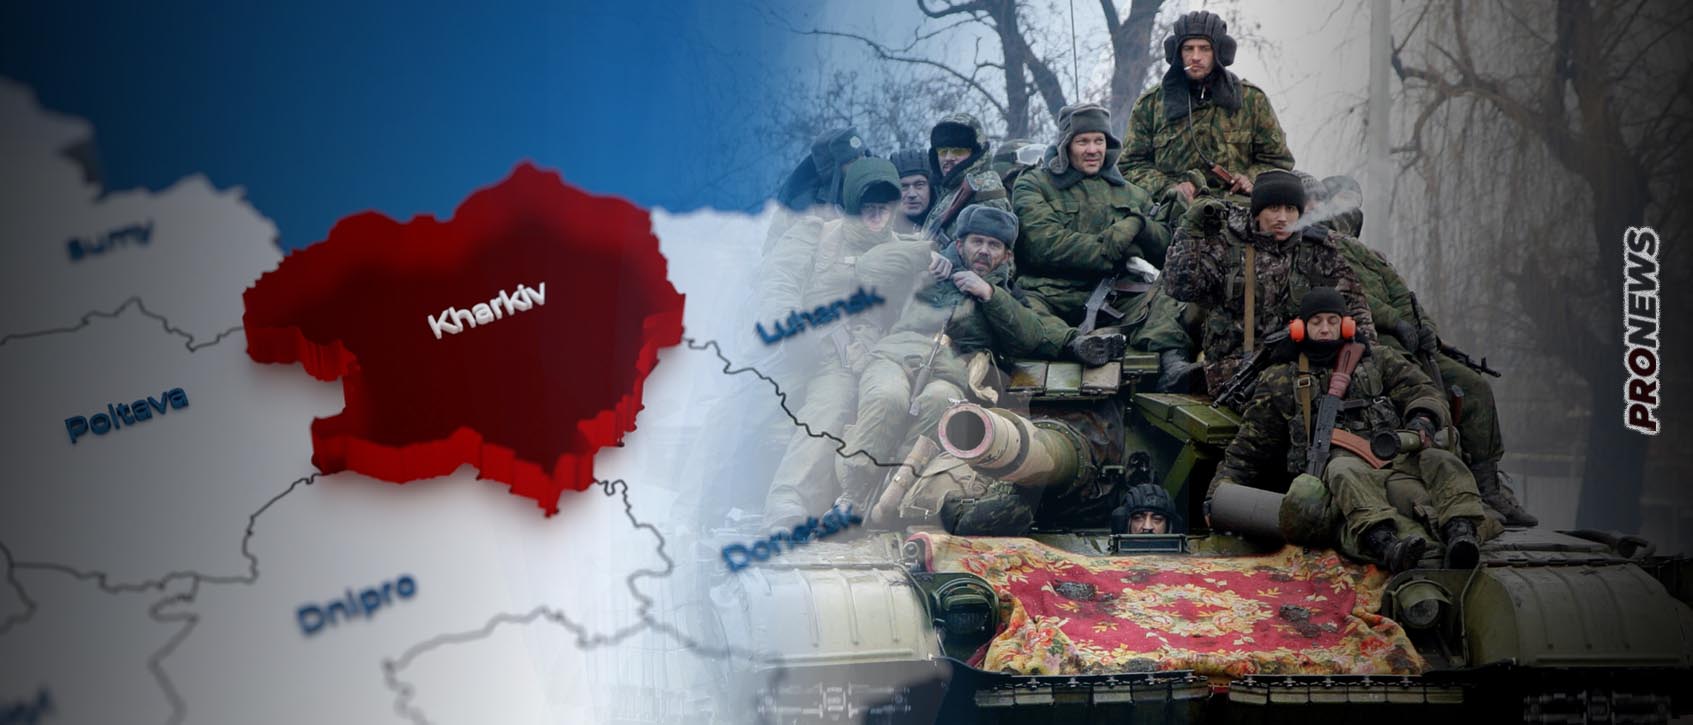 Περικυκλώνει το Χάρκοβο το ρωσικό Σώμα Στρατού «Δύση»